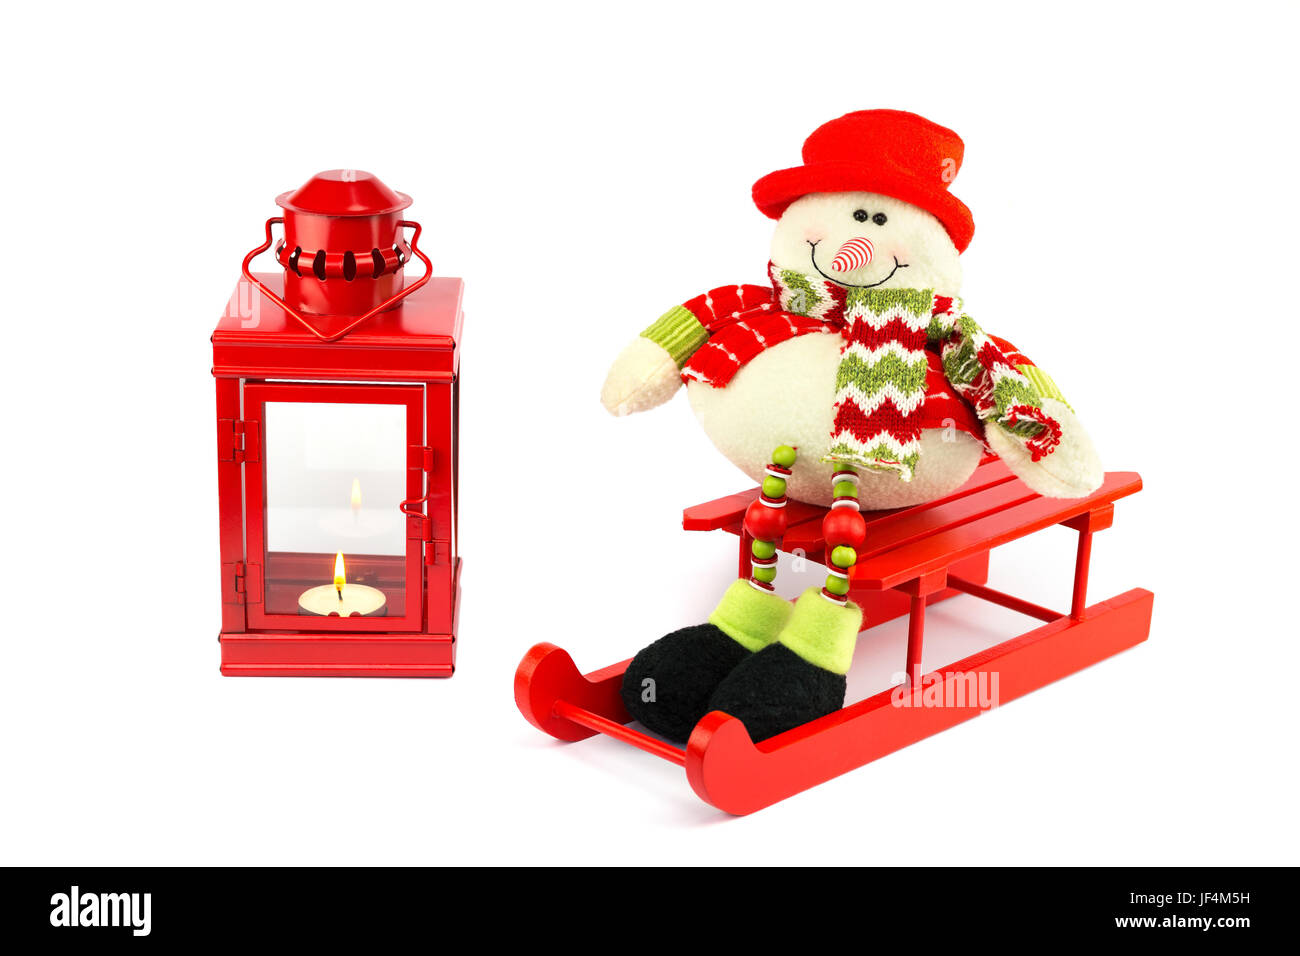 Le Snowman sur sleigh avec lanterne rouge Banque D'Images